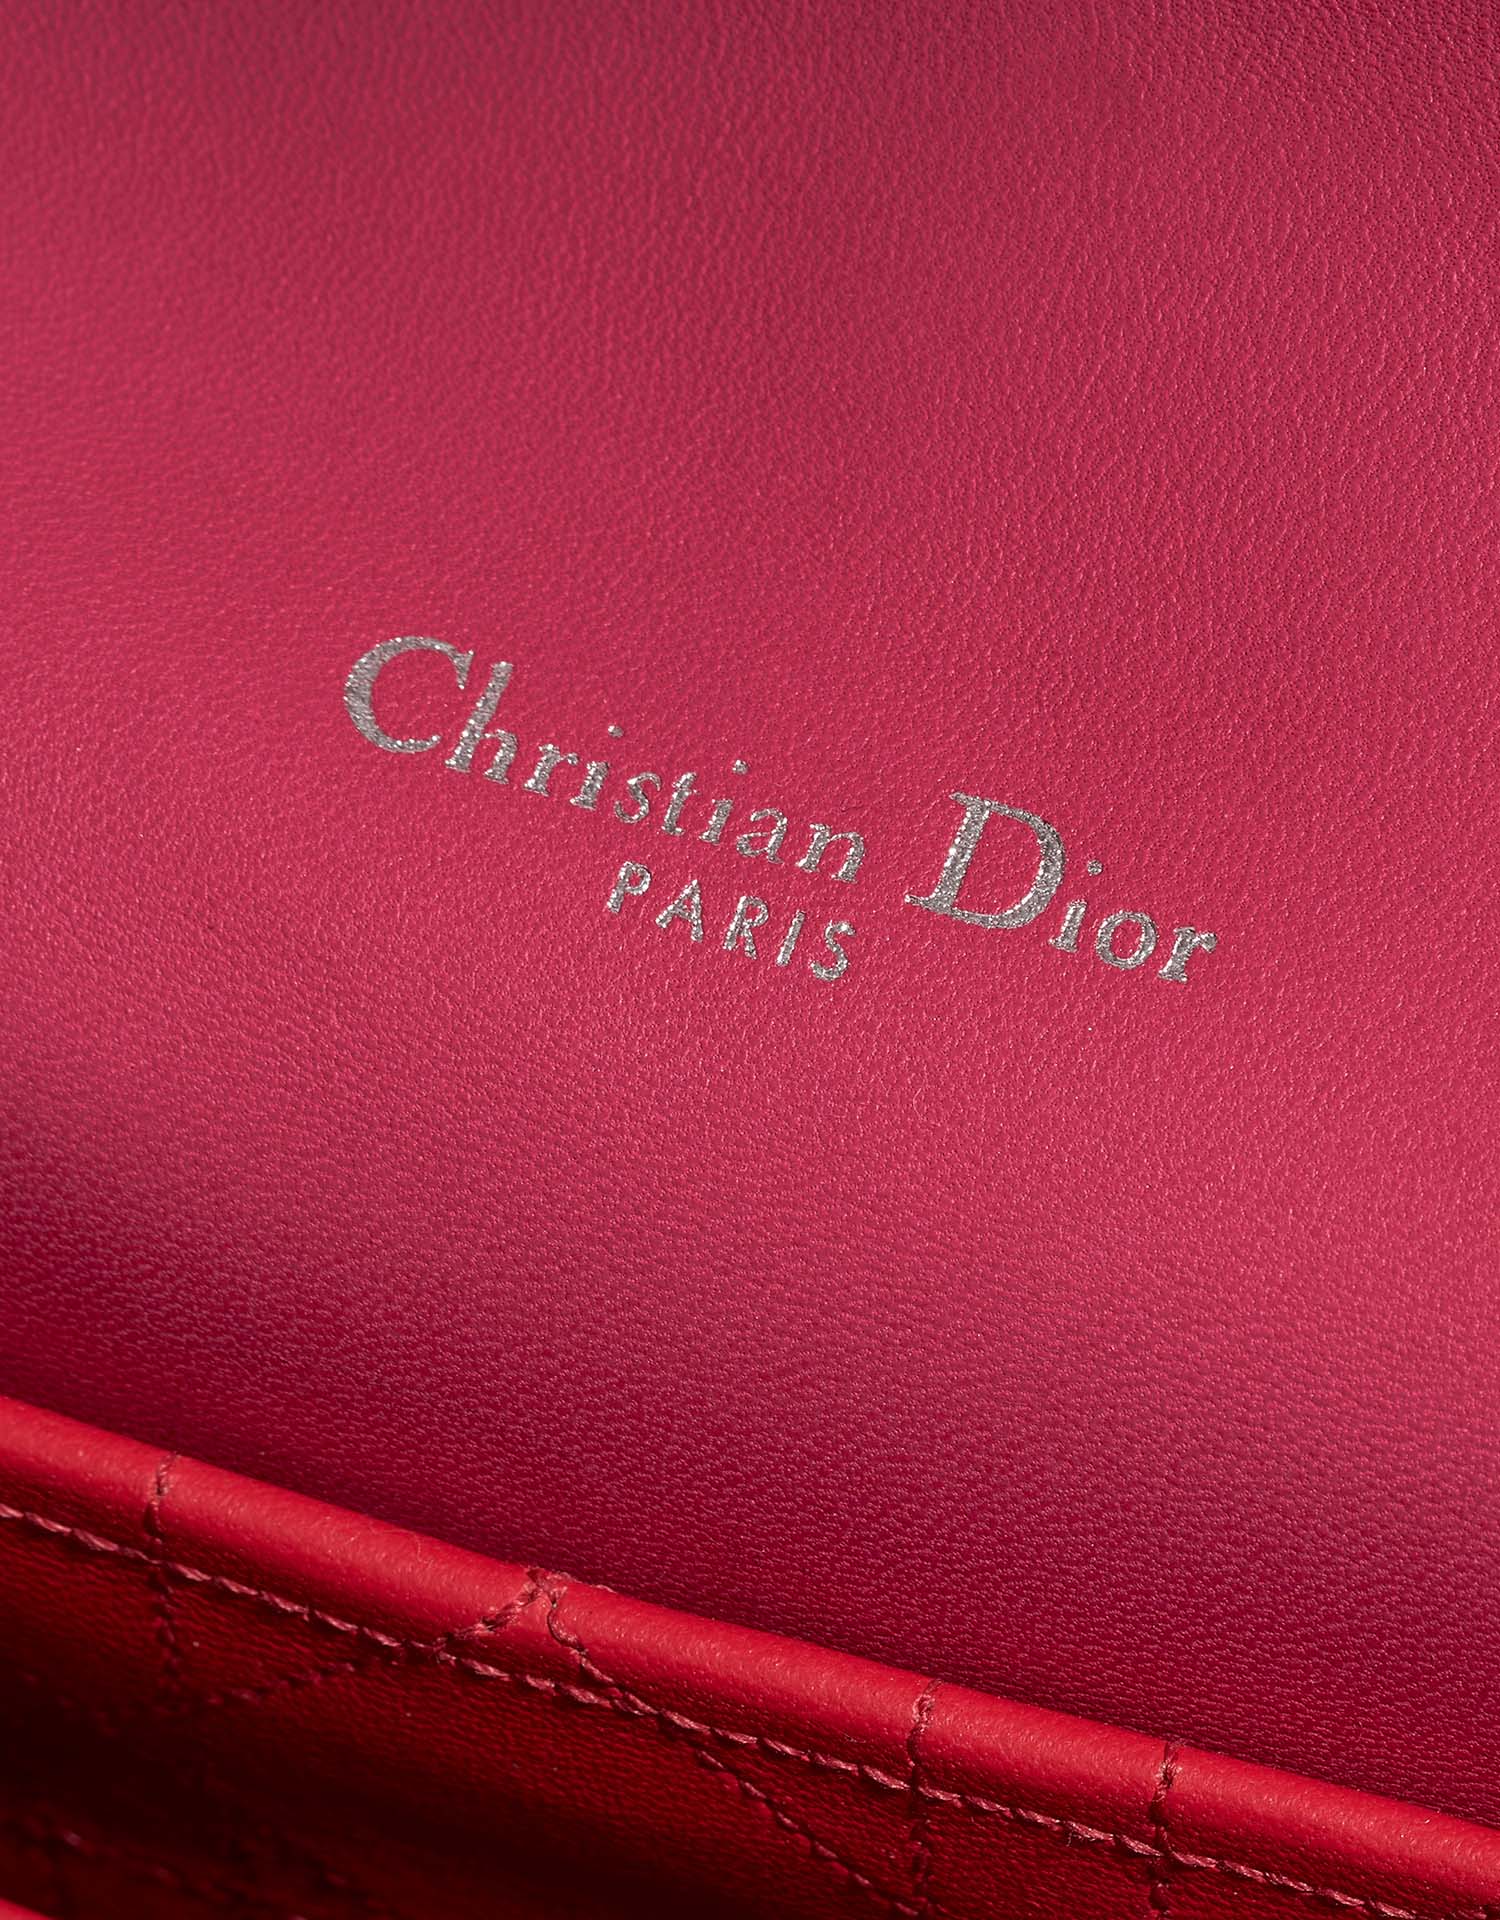 Gebrauchte Dior Tasche Miss Dior Medium Lammleder Pink Pink, Rose | Verkaufen Sie Ihre Designer-Tasche auf Saclab.com